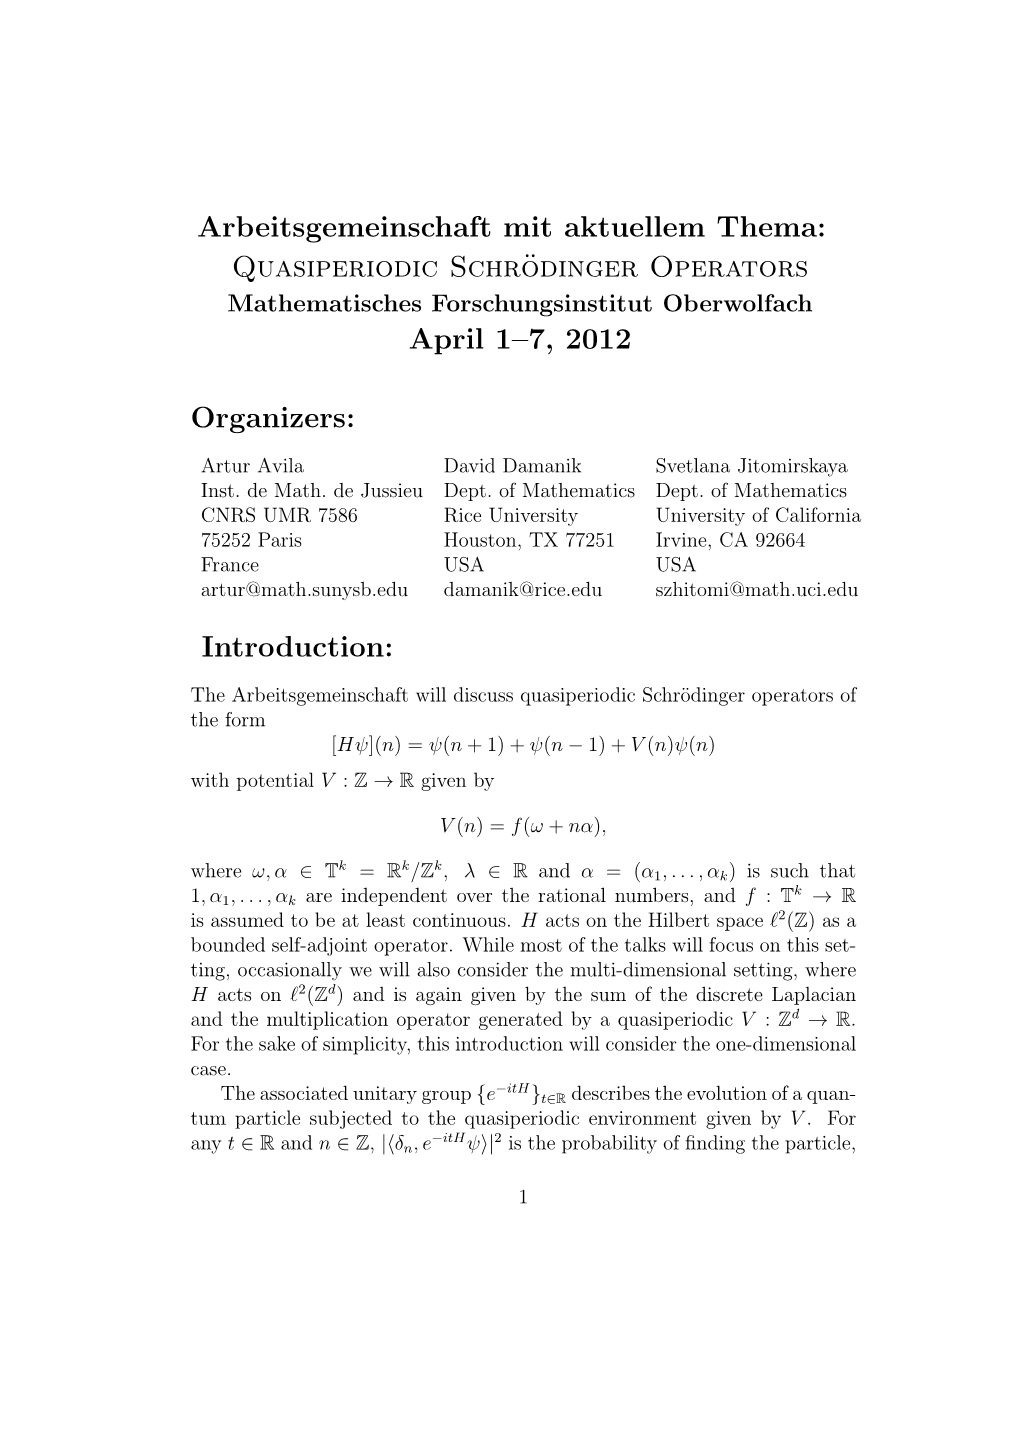 Quasiperiodic Schrödinger Operators April 1–7, 2012 Organizers